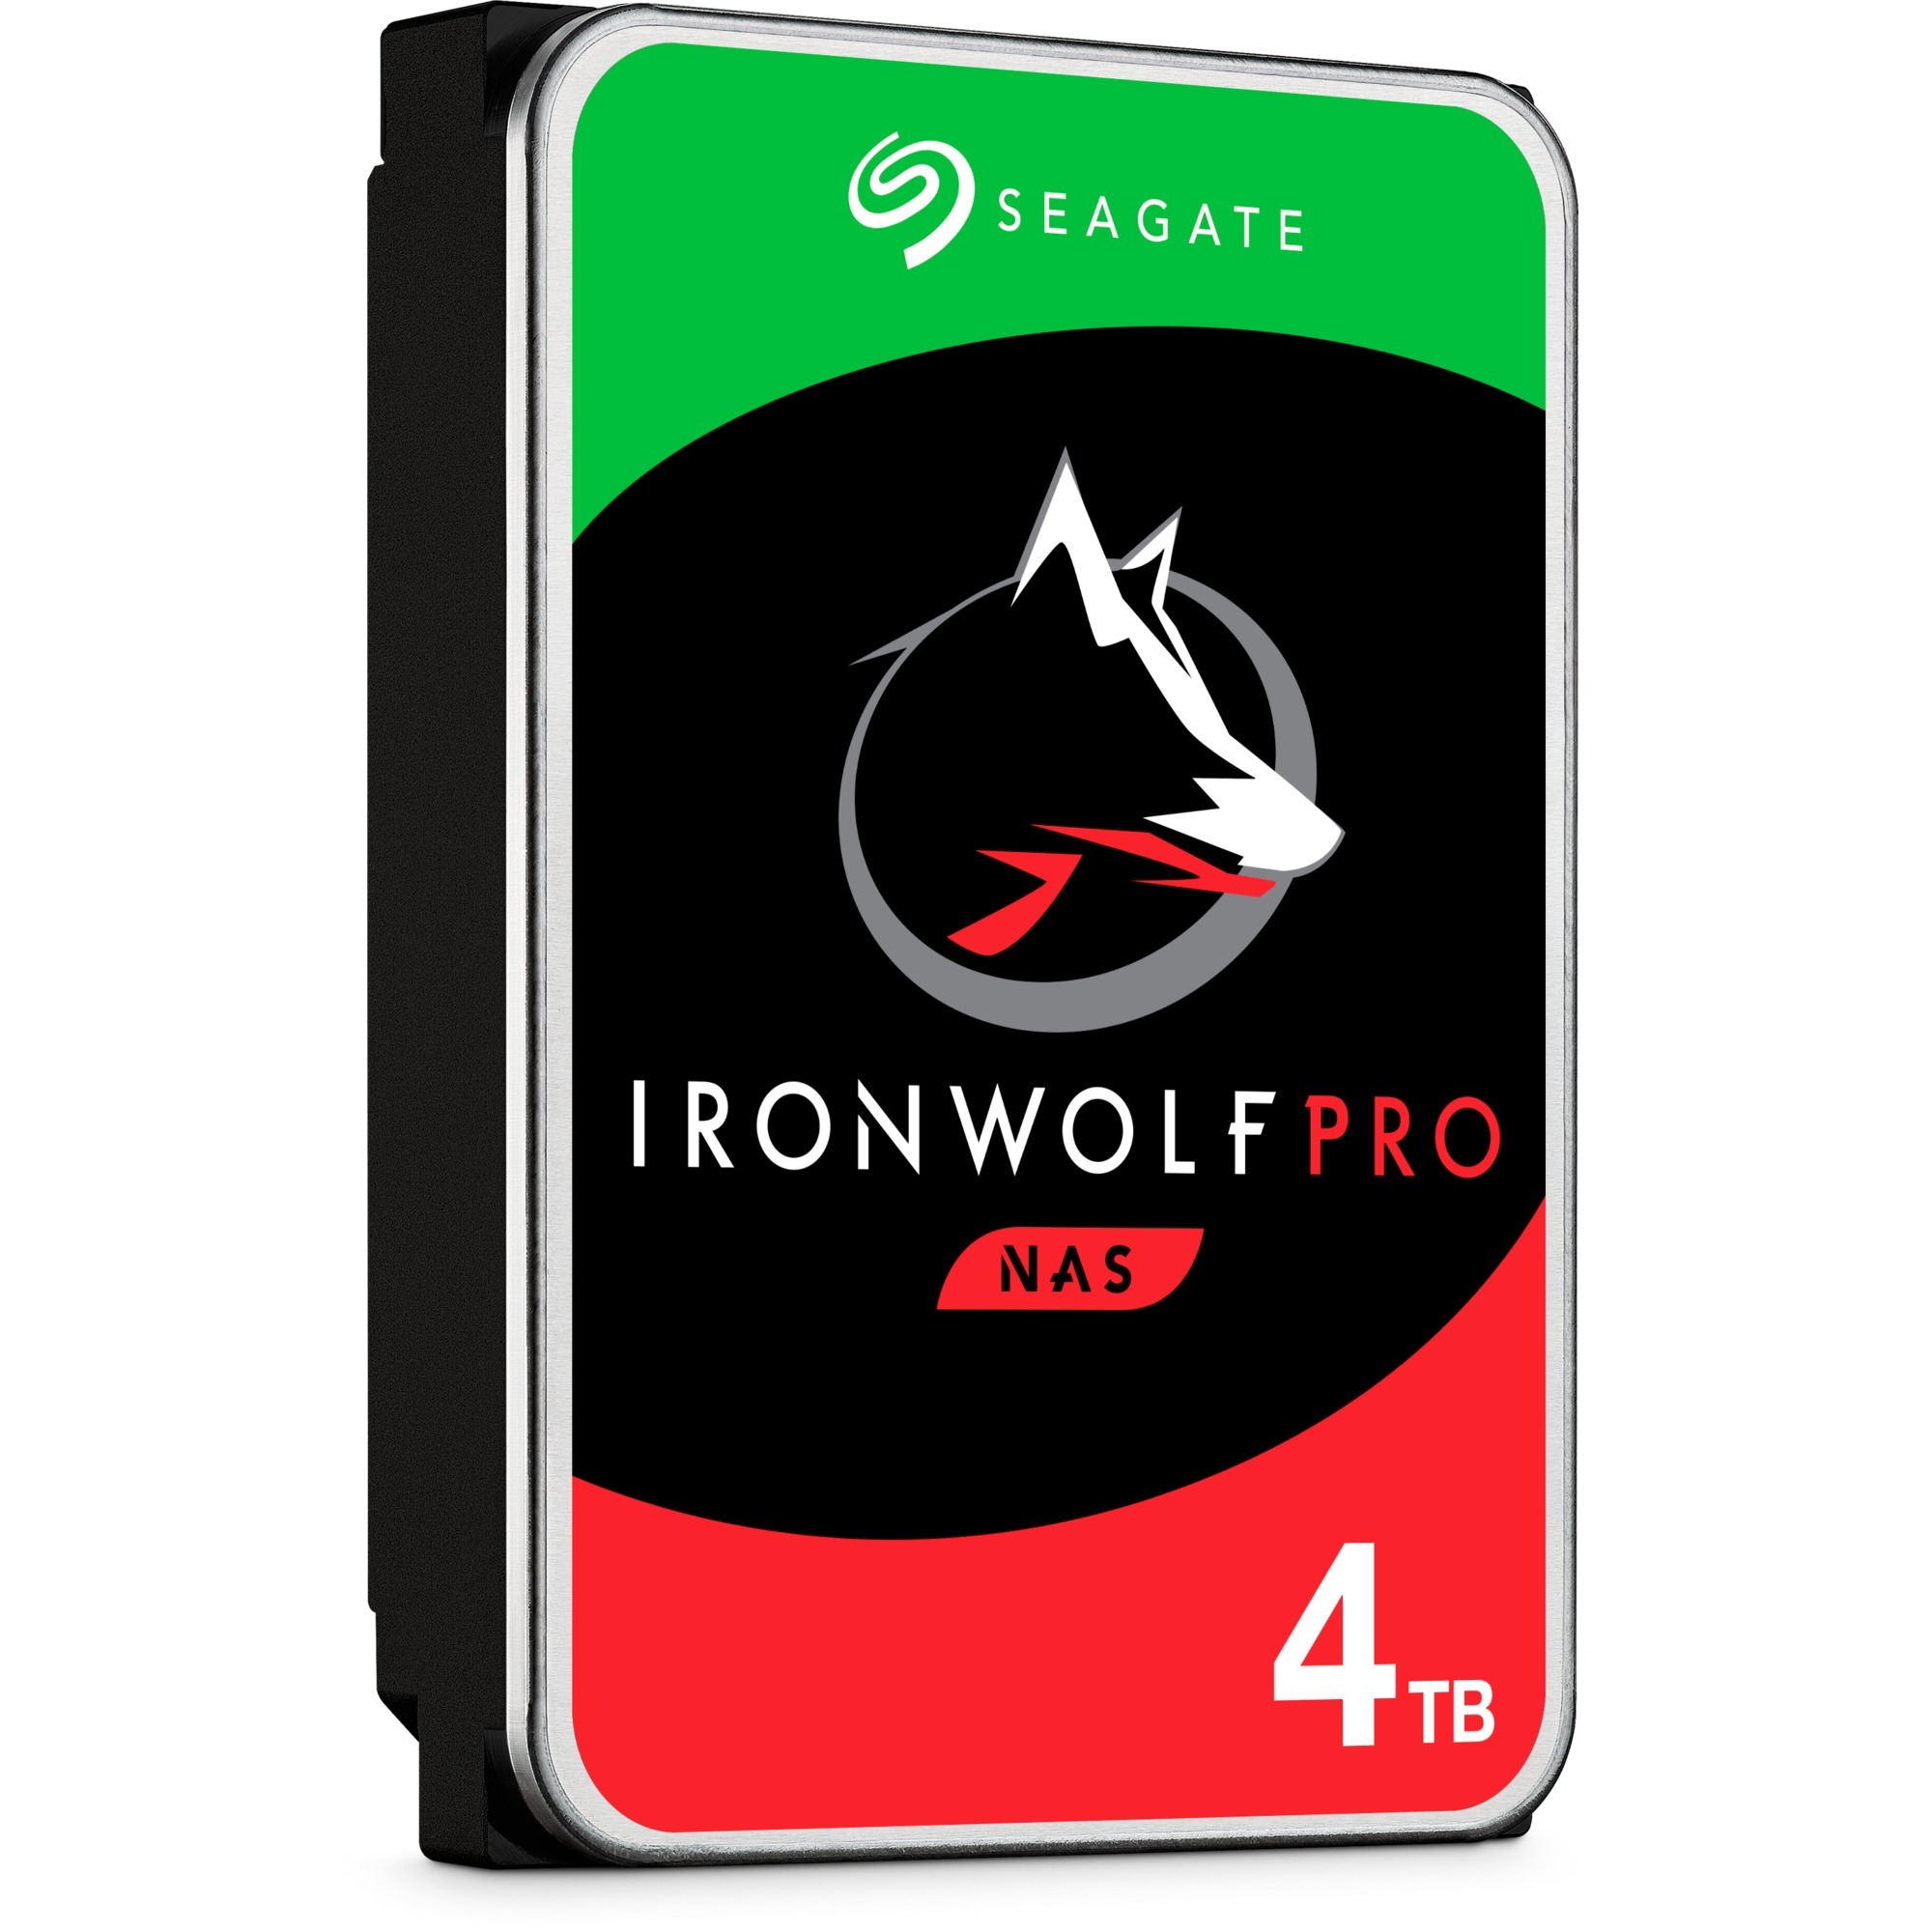 Image of Alternate - IronWolf Pro NAS 4 TB CMR, Festplatte online einkaufen bei Alternate